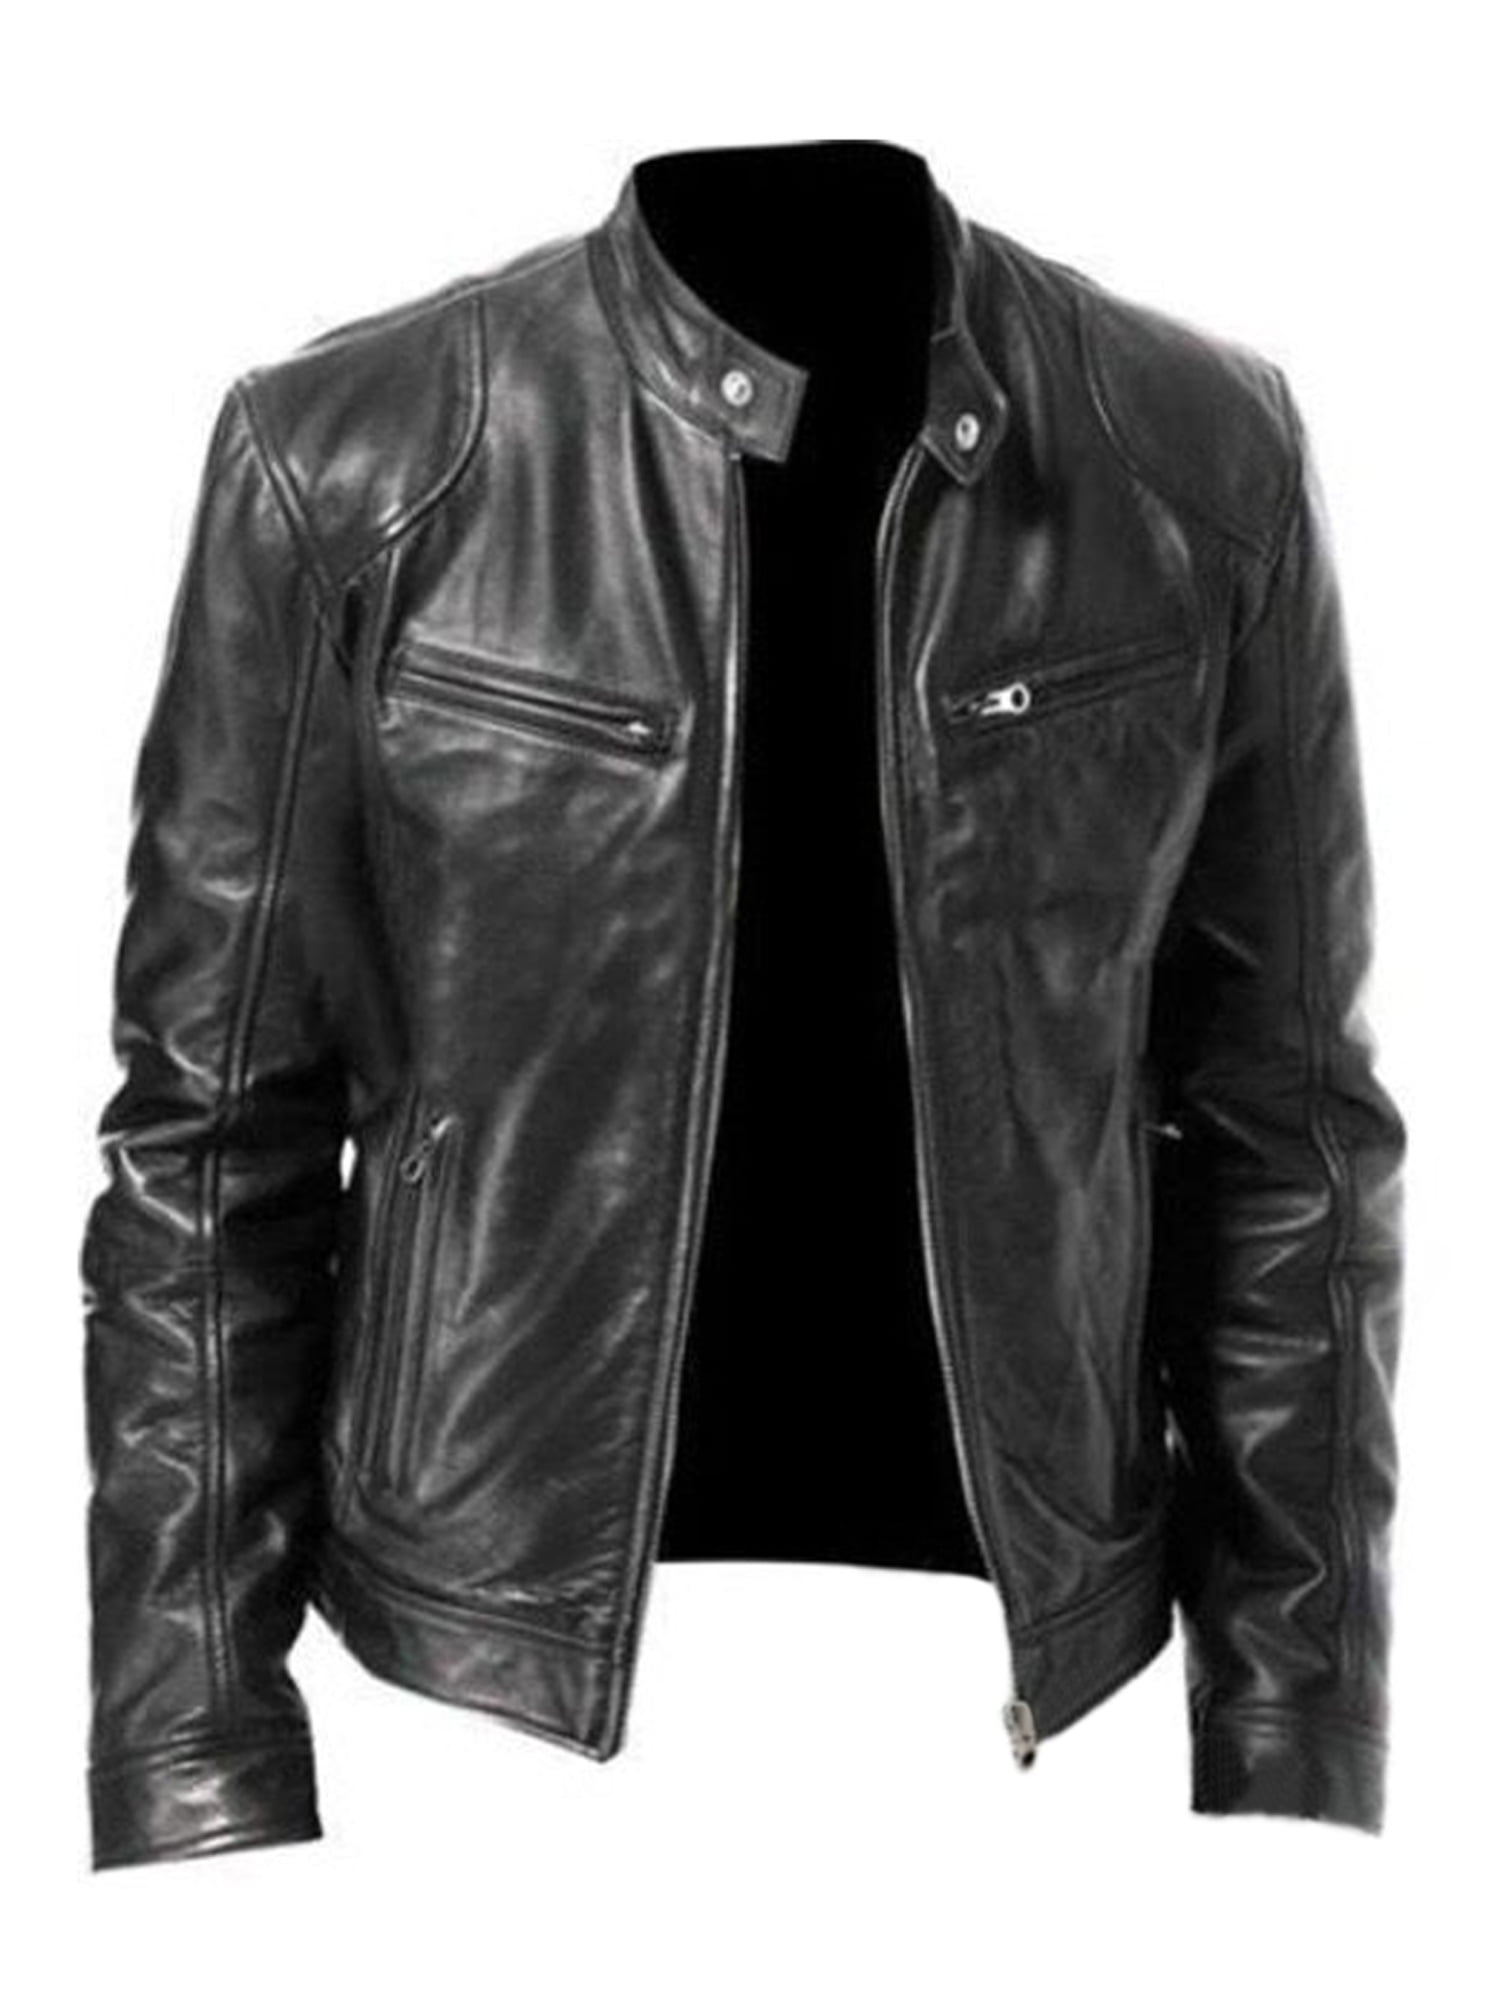 Men Casual Leather Jackets Motorcycle Biker Jackets Outwear Coat Overcoat Winter 